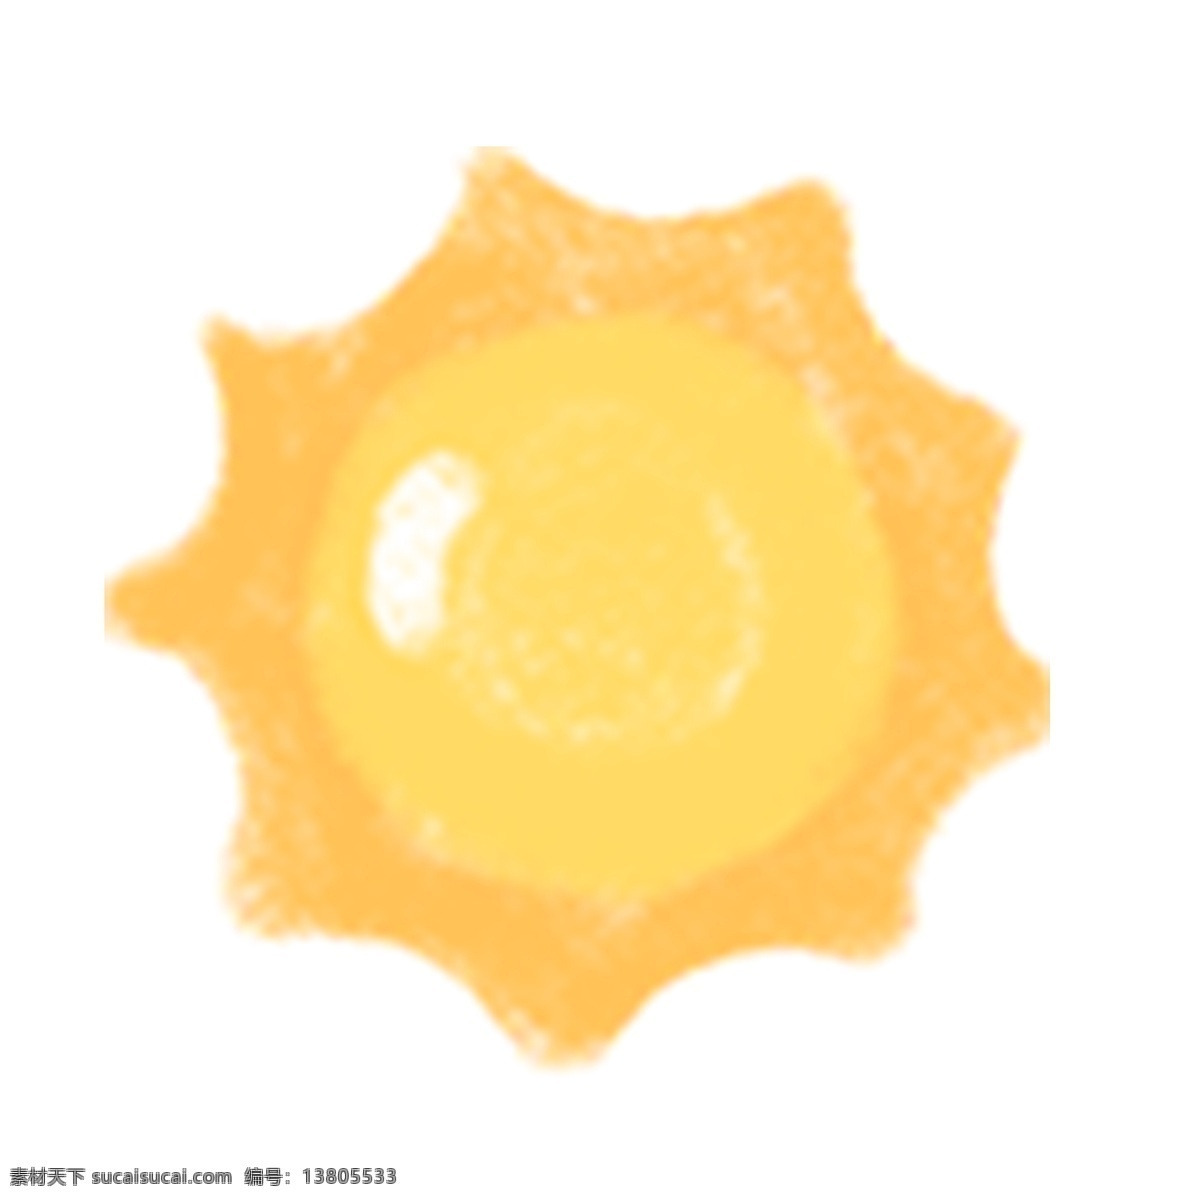 黄色 太阳 ui 图标 亮黄色 阳光 日 太阳图标 手绘插画 插画风图标 插画太阳